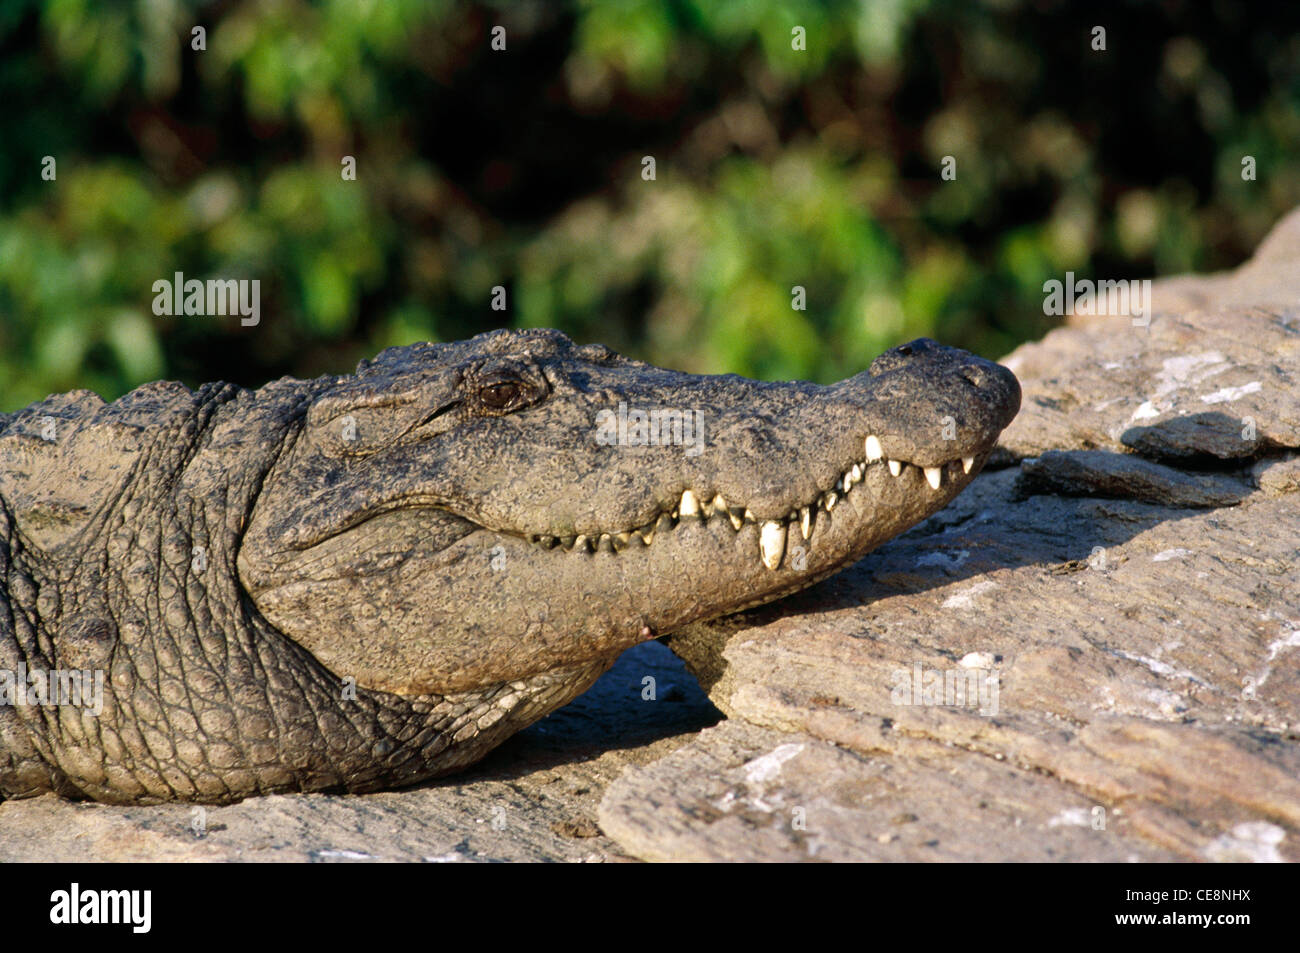 TAN 80005 : voyou , Reptile , Marsh profil crocodile Crocodylus palustris face close up Ranganthitto , Karnataka , Inde Banque D'Images